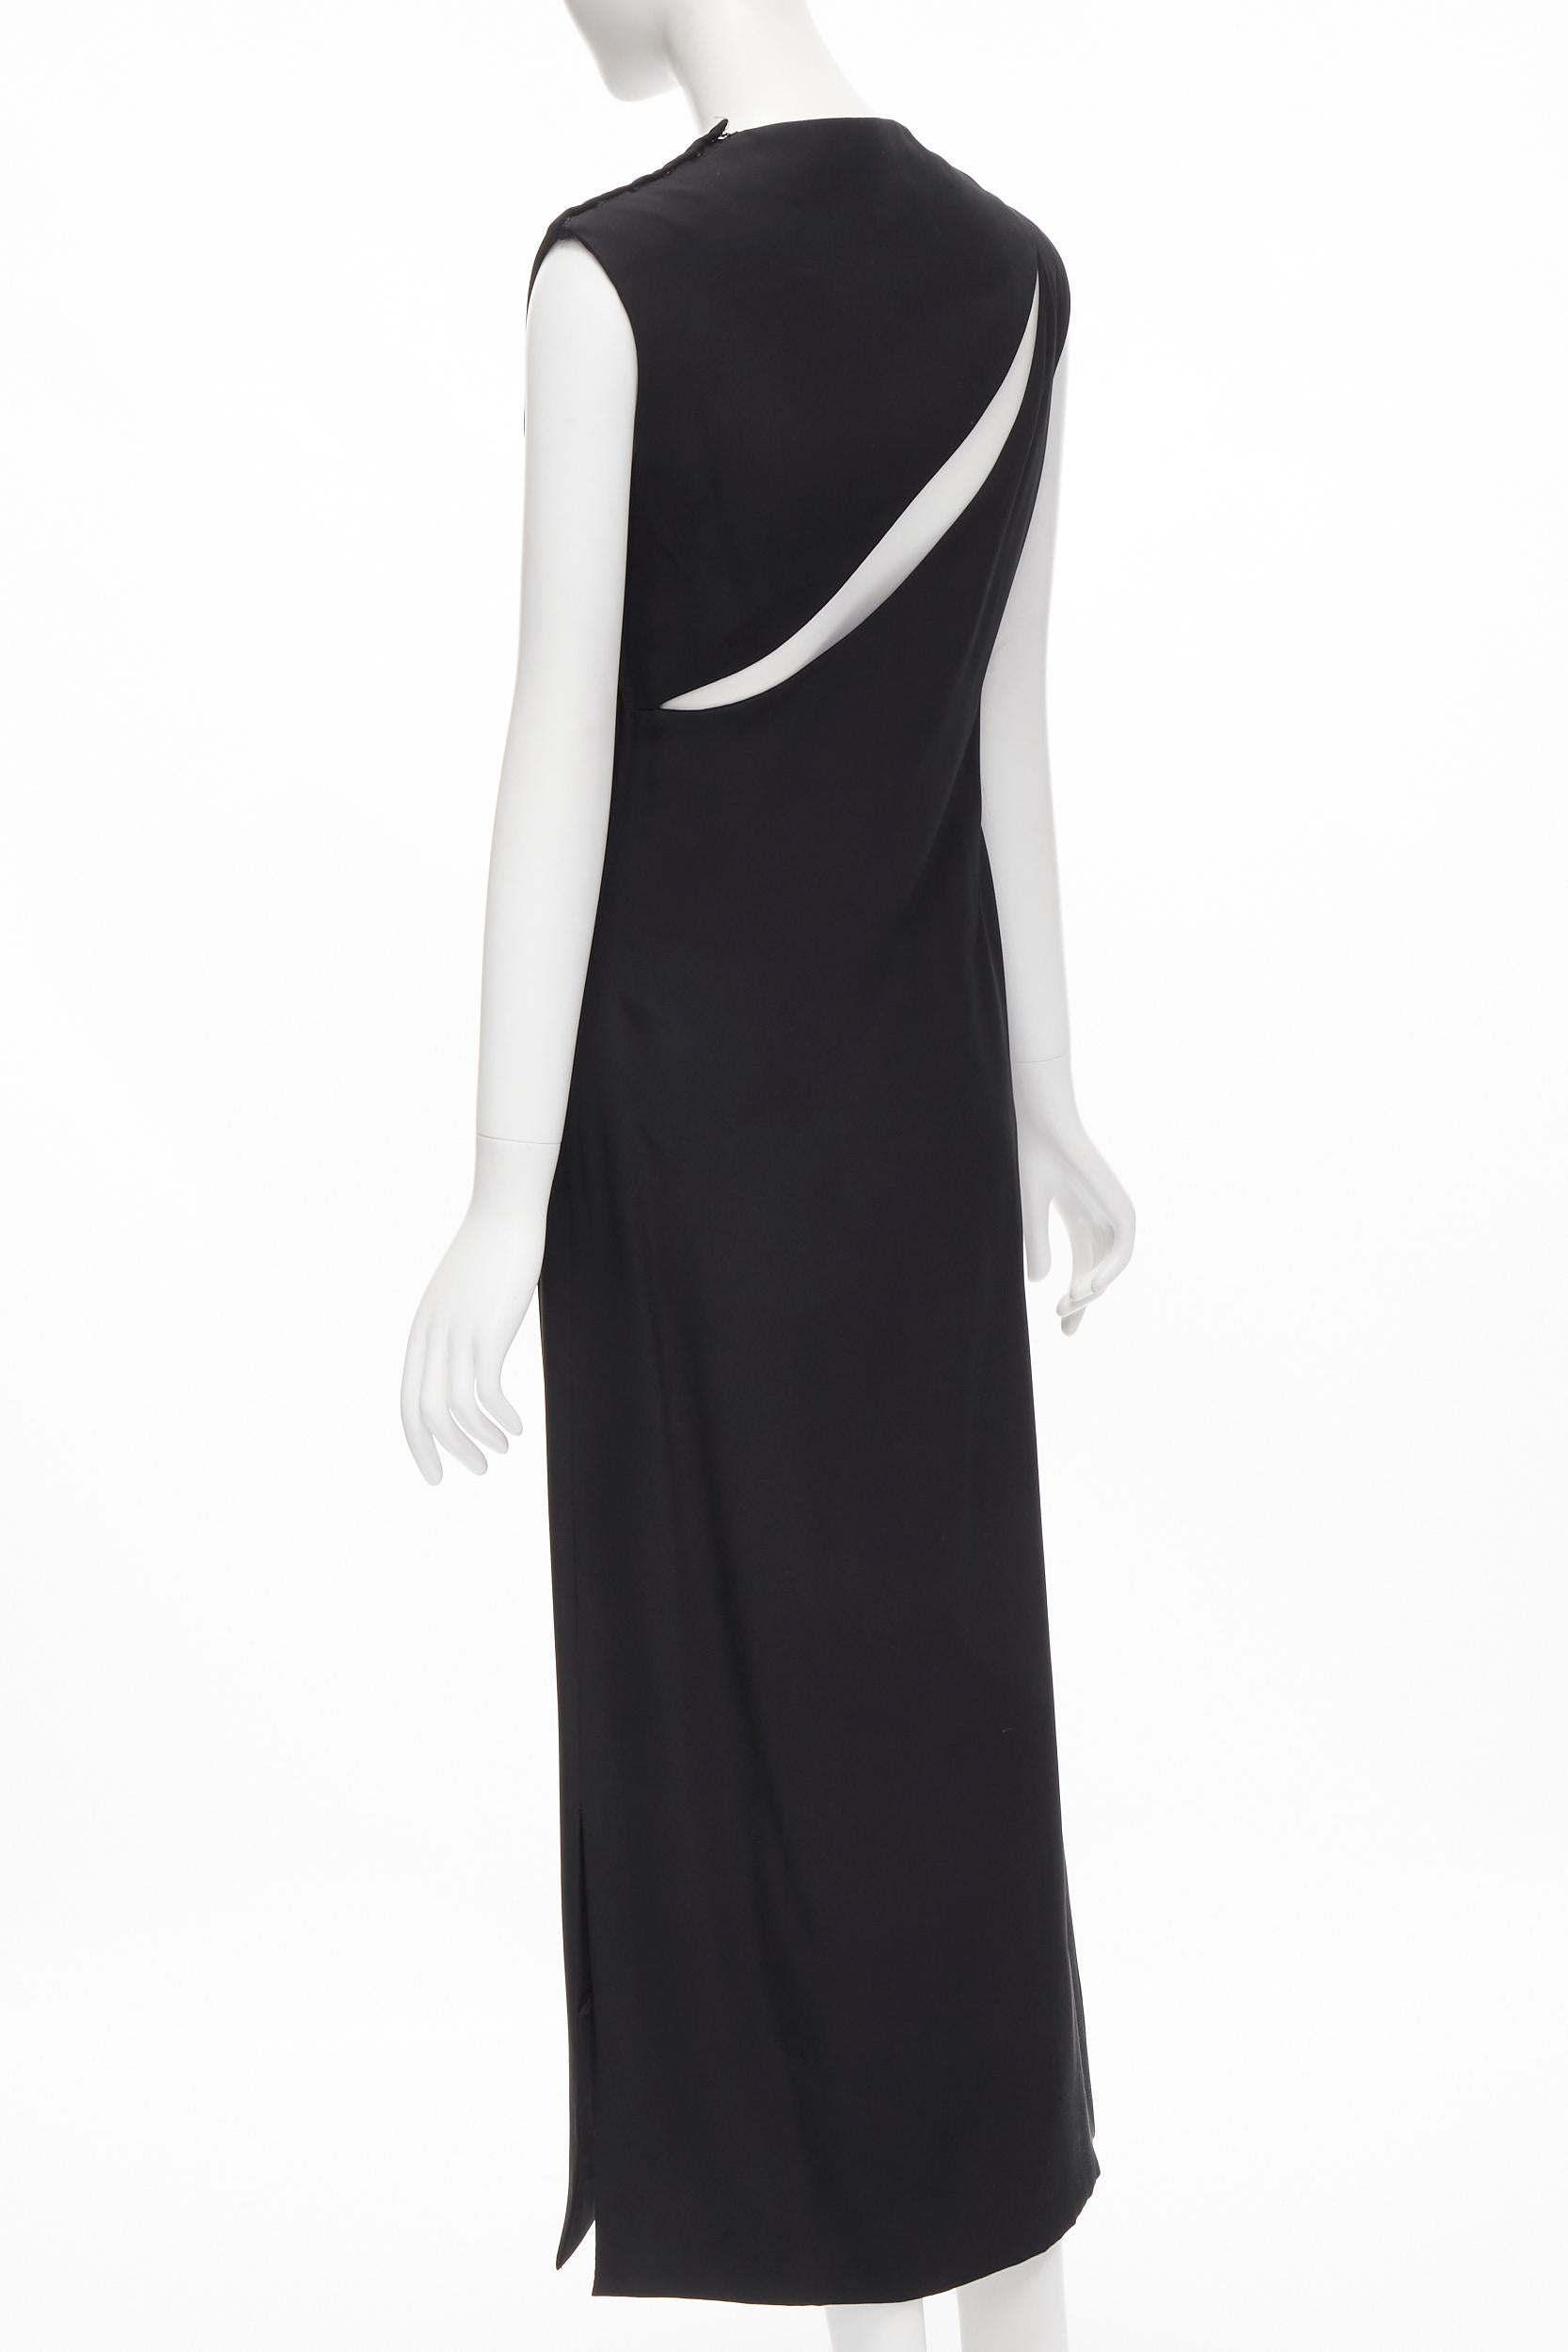 MADAME GRES Haute Couture Paris 1972 black crepe slash slit cut out dress M For Sale 1